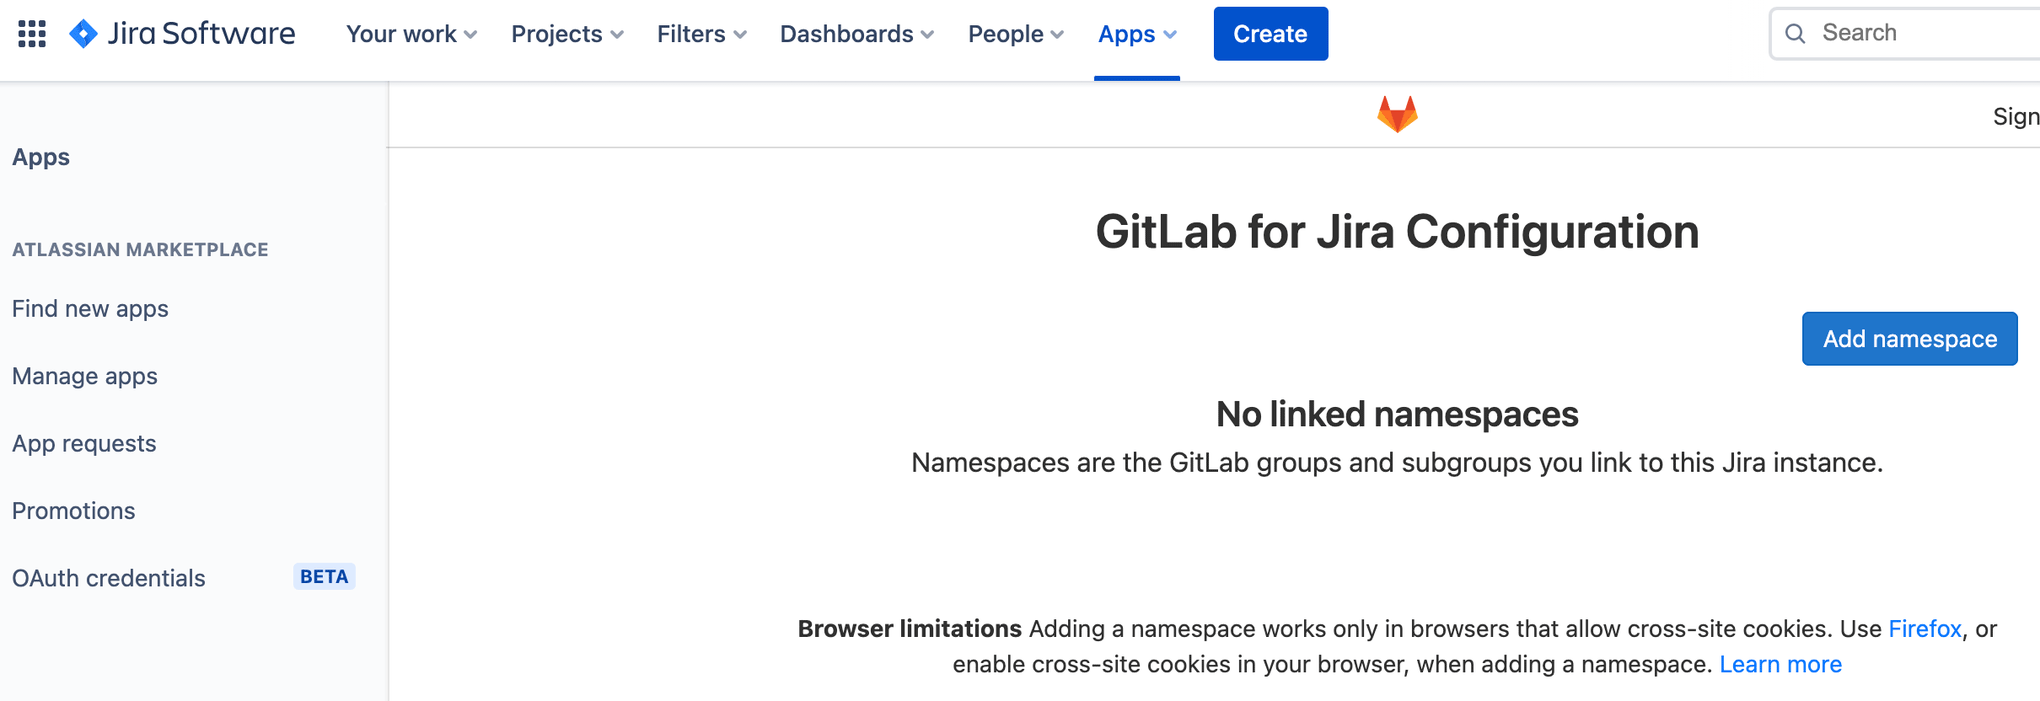 Tela para adicionar um namespace à configuração do GitLab Jira Software